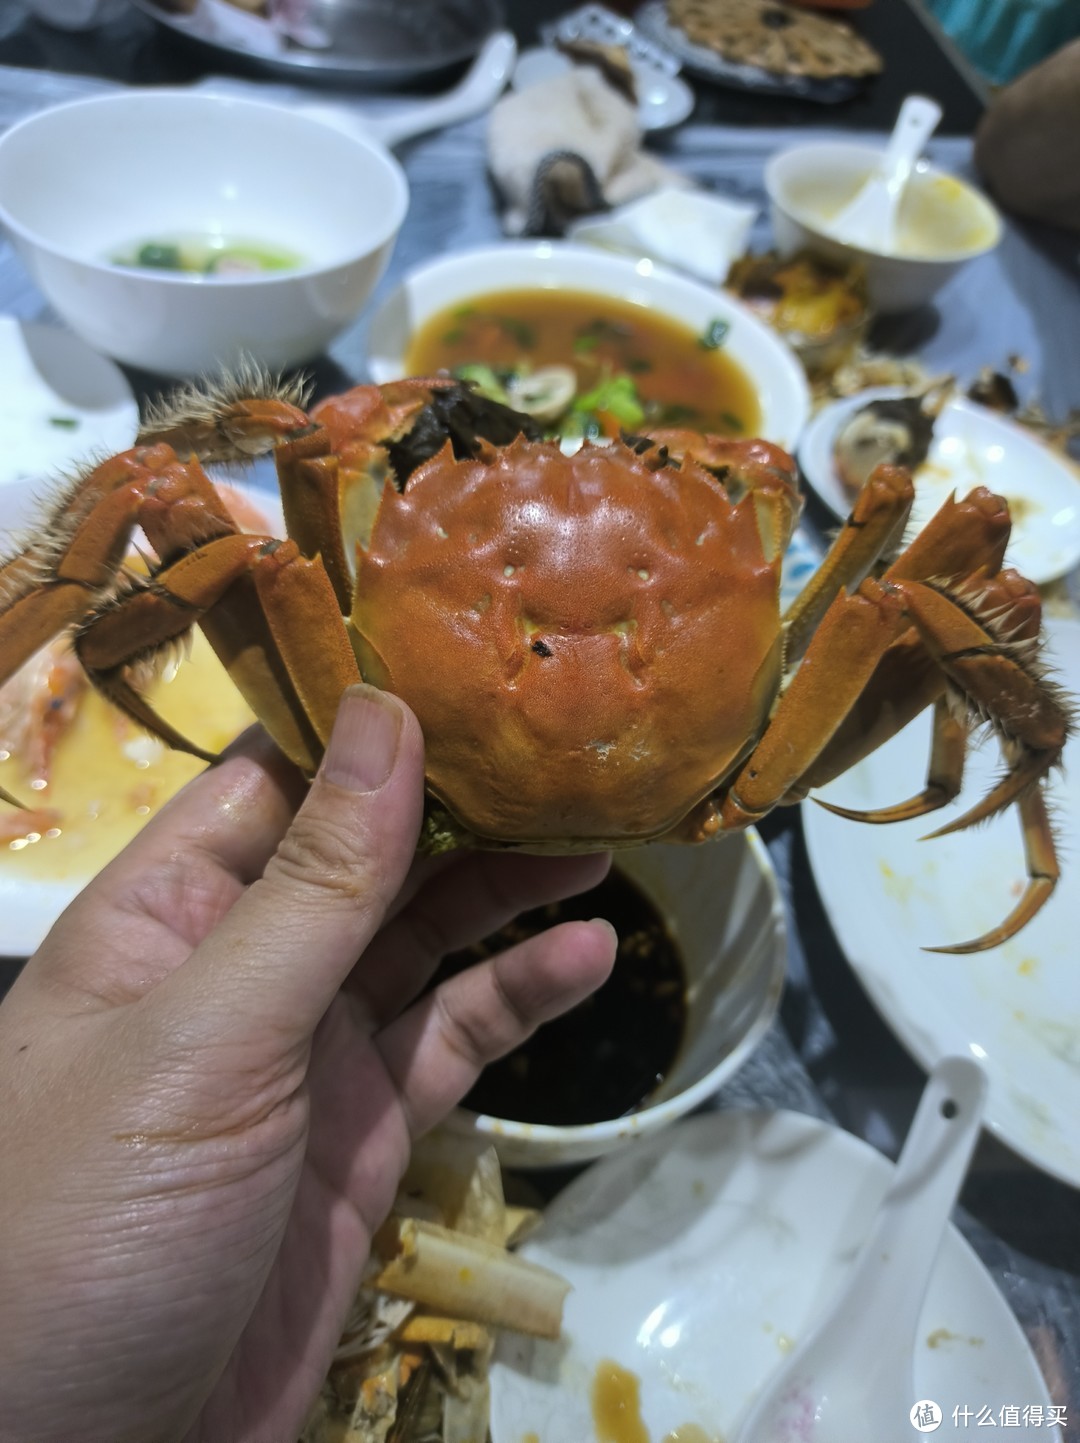 姗姗来迟的泰州湖蟹，个儿大肉鲜，味道真不错！